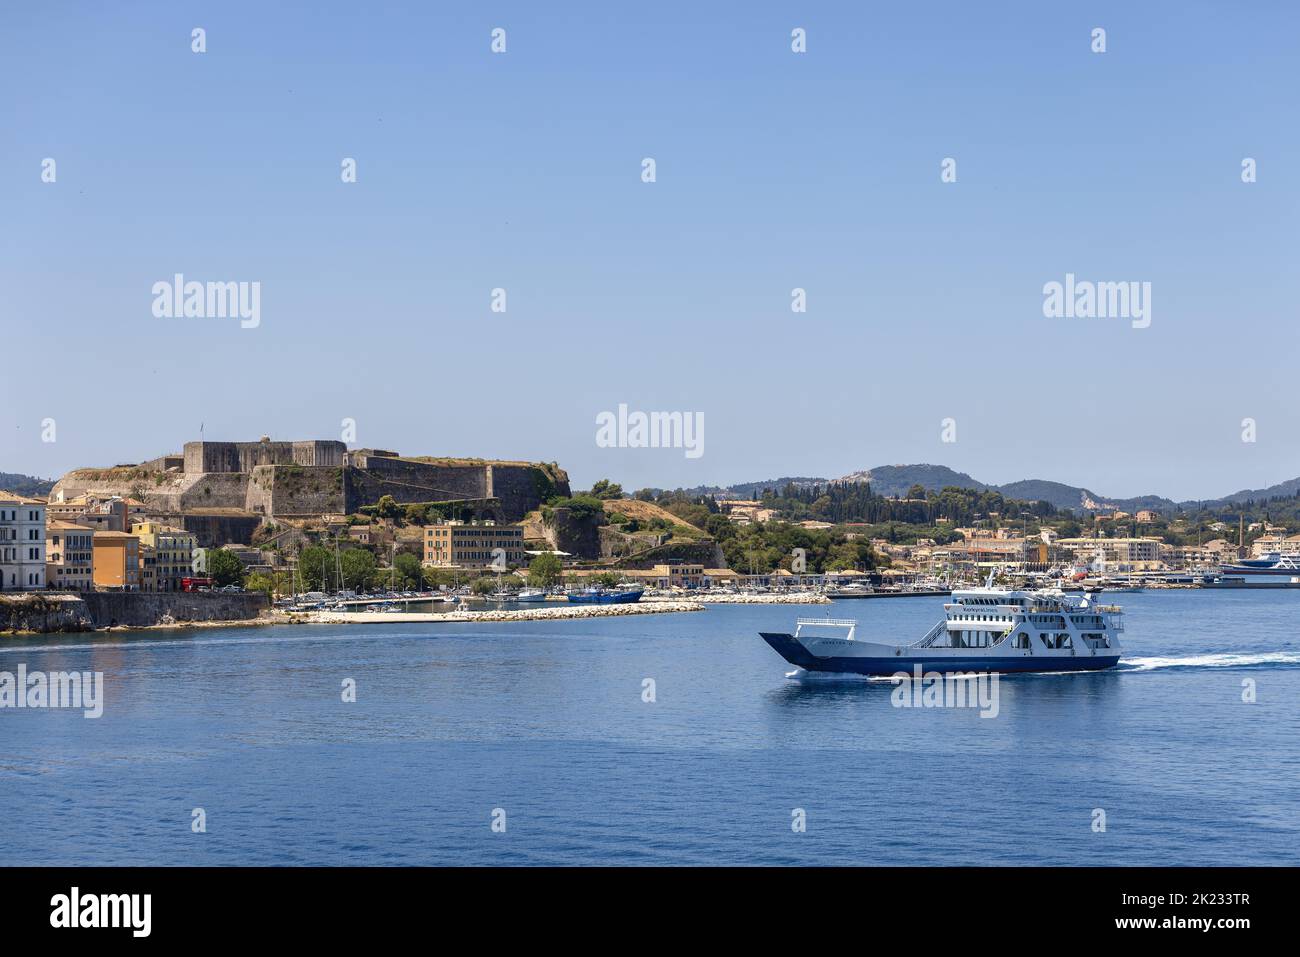 Un piccolo traghetto bianco e blu attraversa la tranquilla baia dell'isola di Corfù sullo sfondo della nuova fortezza della città, le isole ioniche, la Grecia Foto Stock